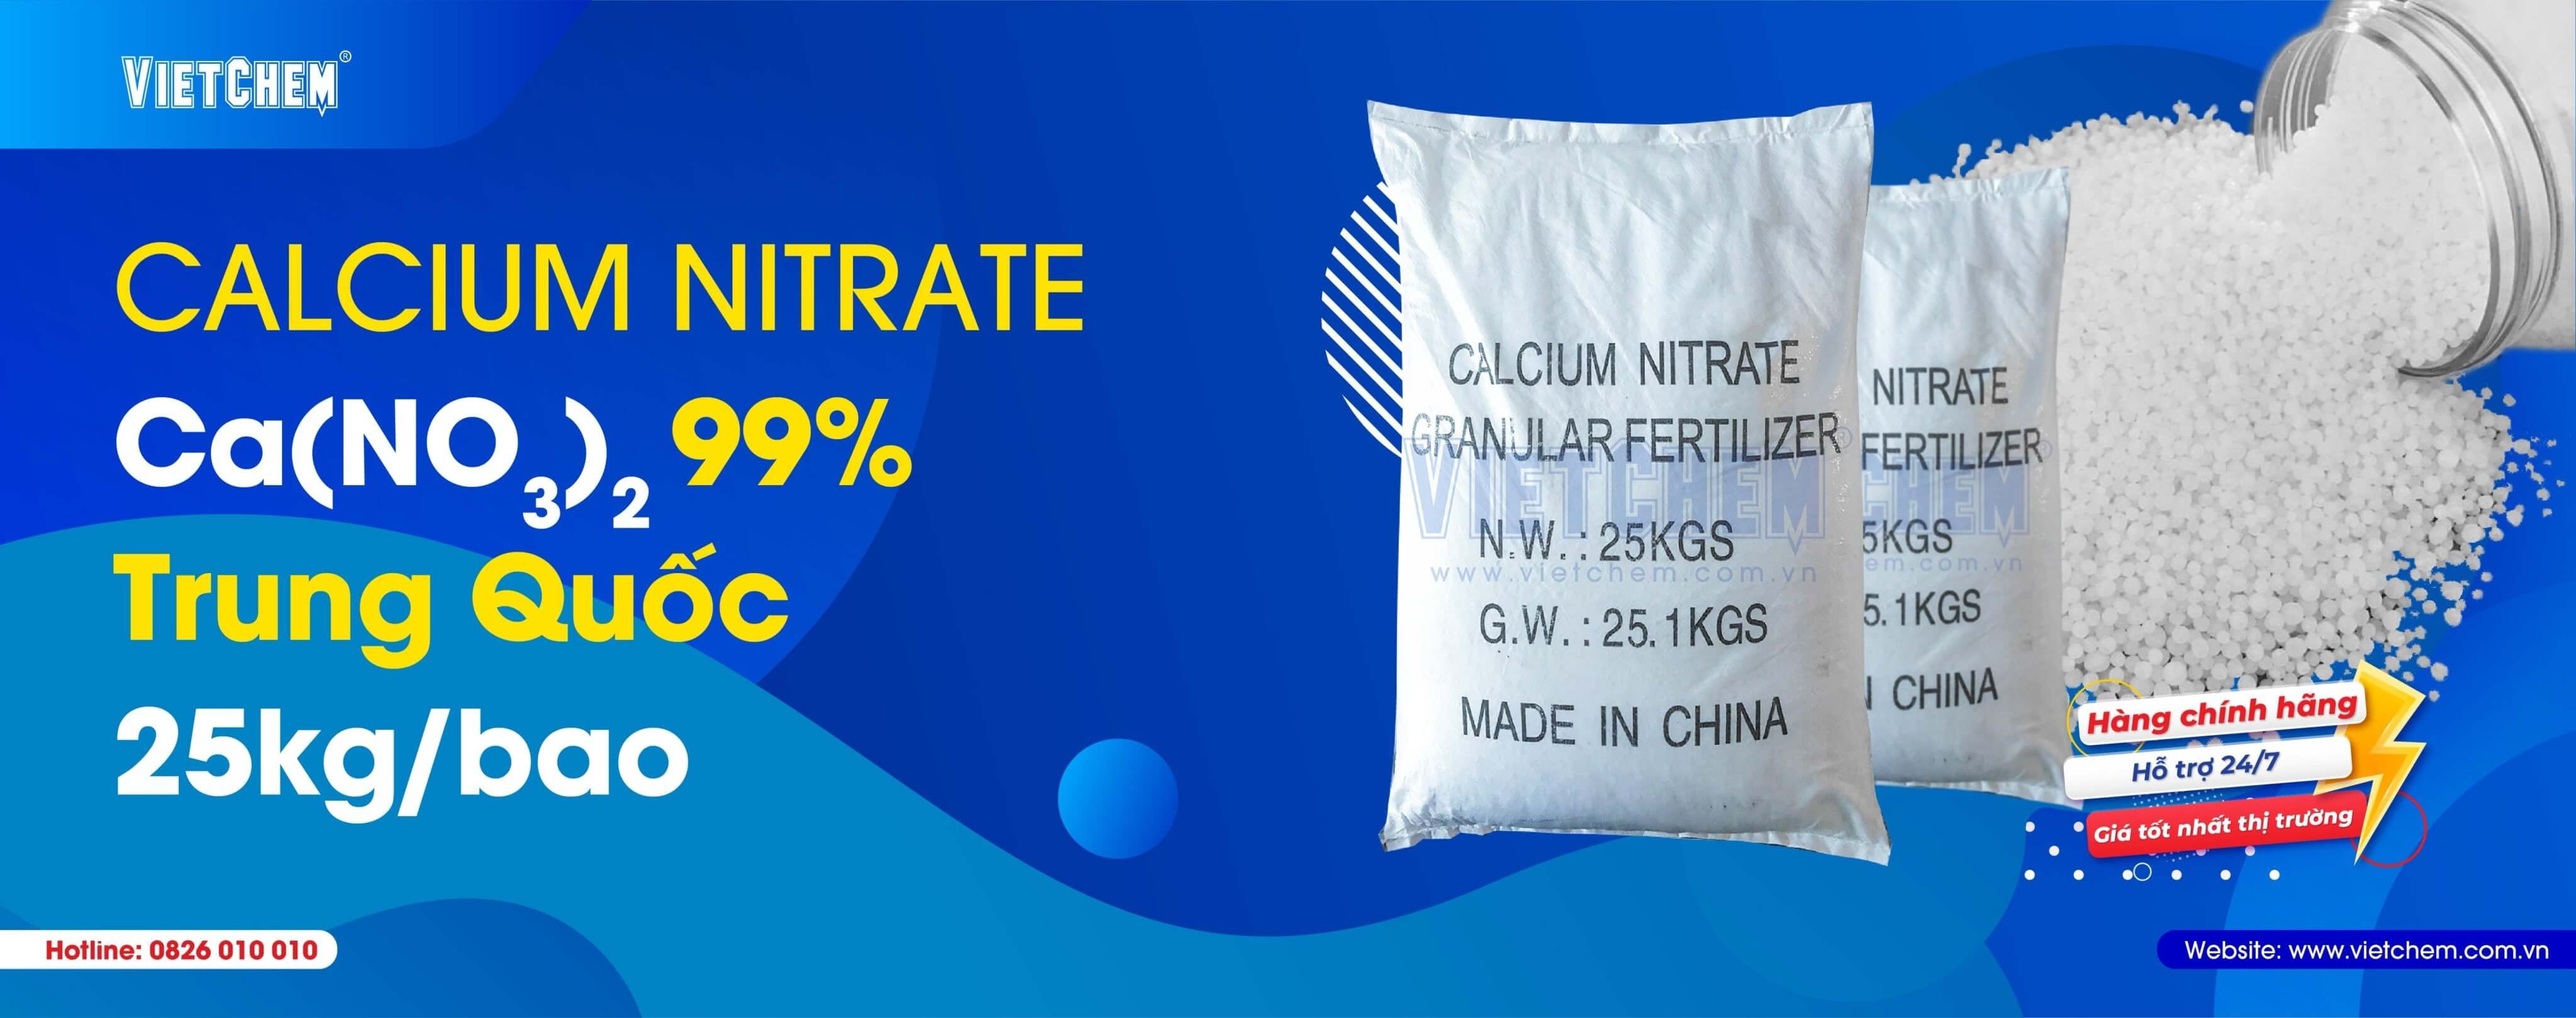 Calcium nitrate Ca(NO3)2 99%, Trung Quốc, 25kg/bao